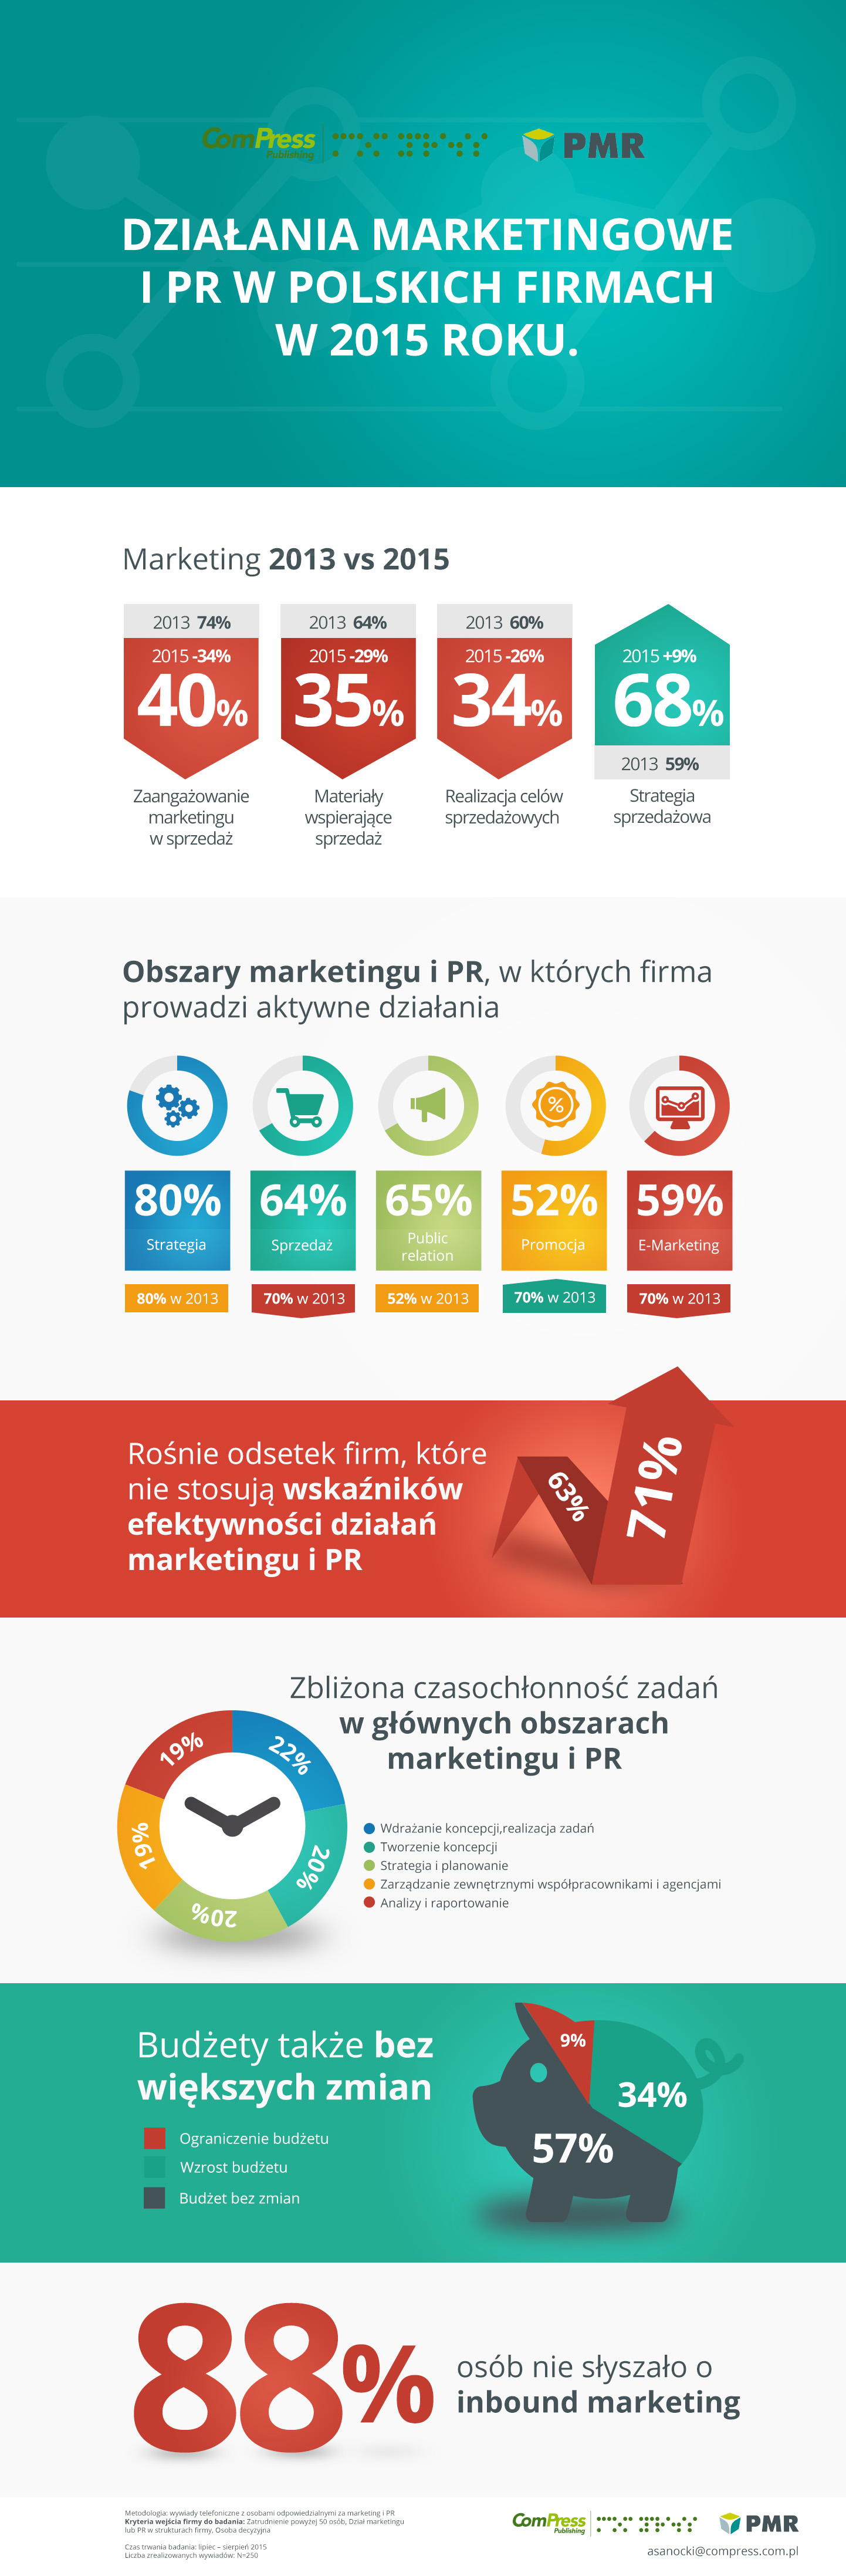 Jak wyglądały działania marketingowe i PR w polskich firmach w 2015 roku?